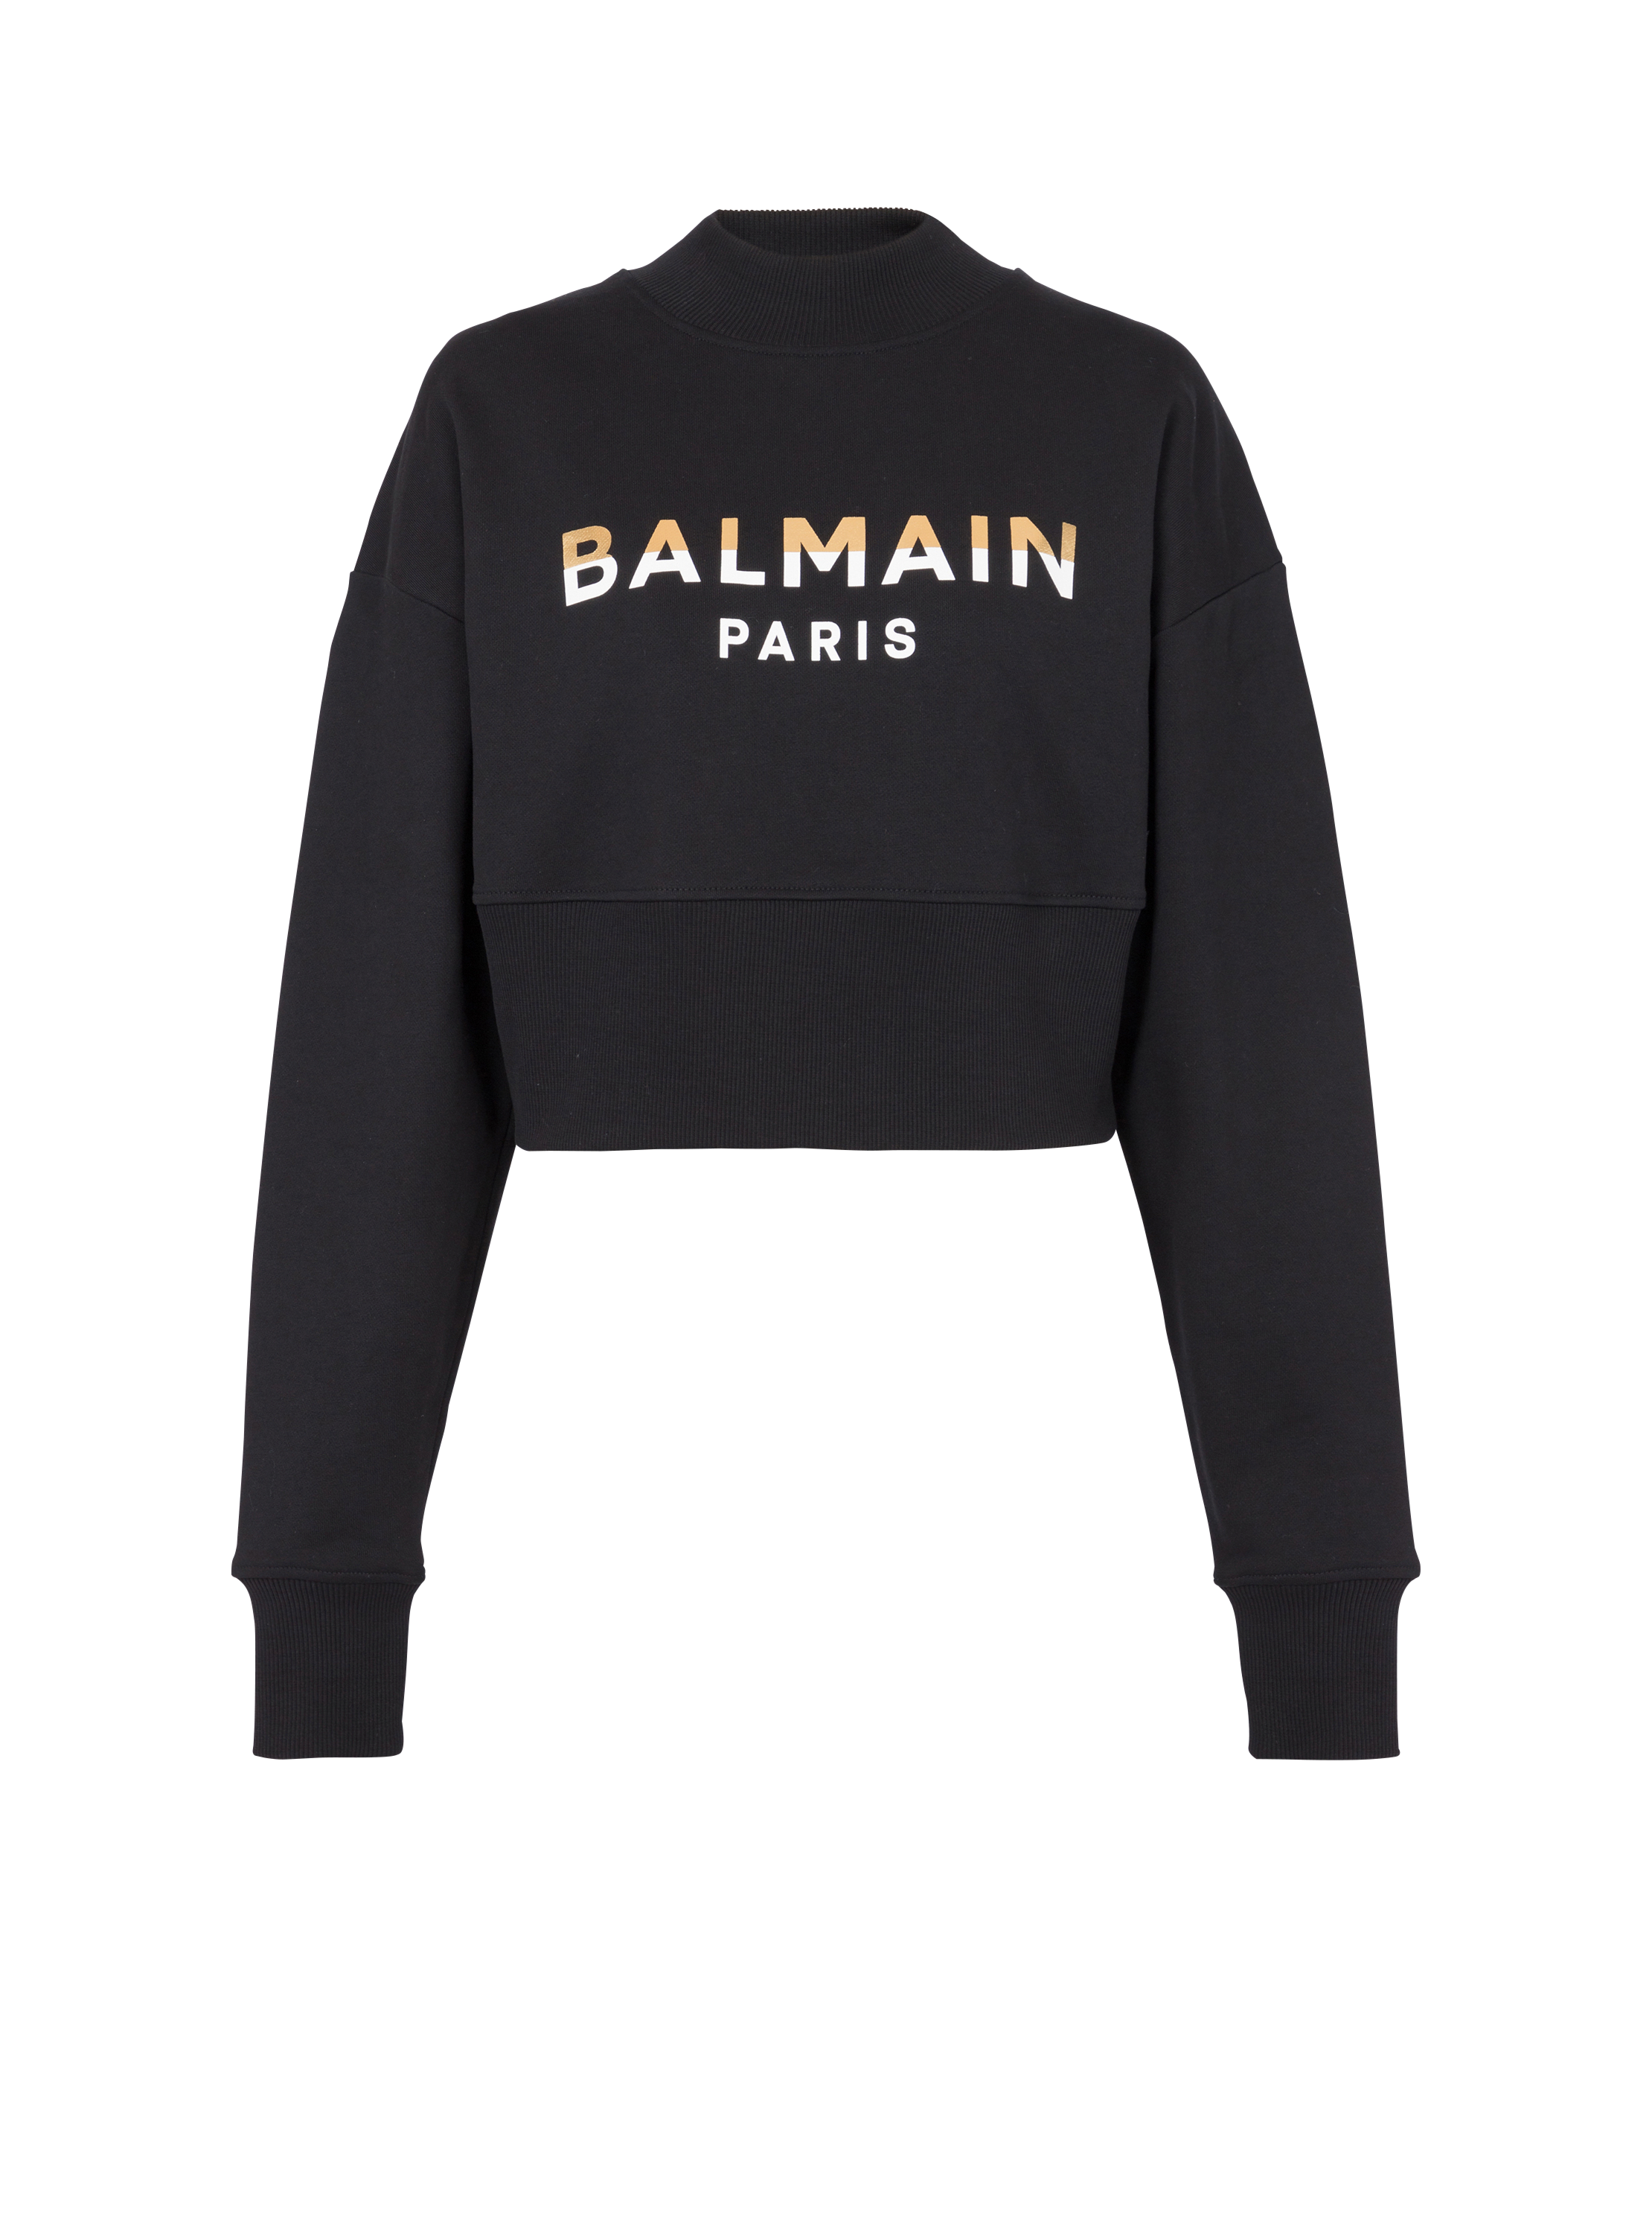 Kurzes Sweatshirt mit Balmain Paris-Print, schwarz, hi-res